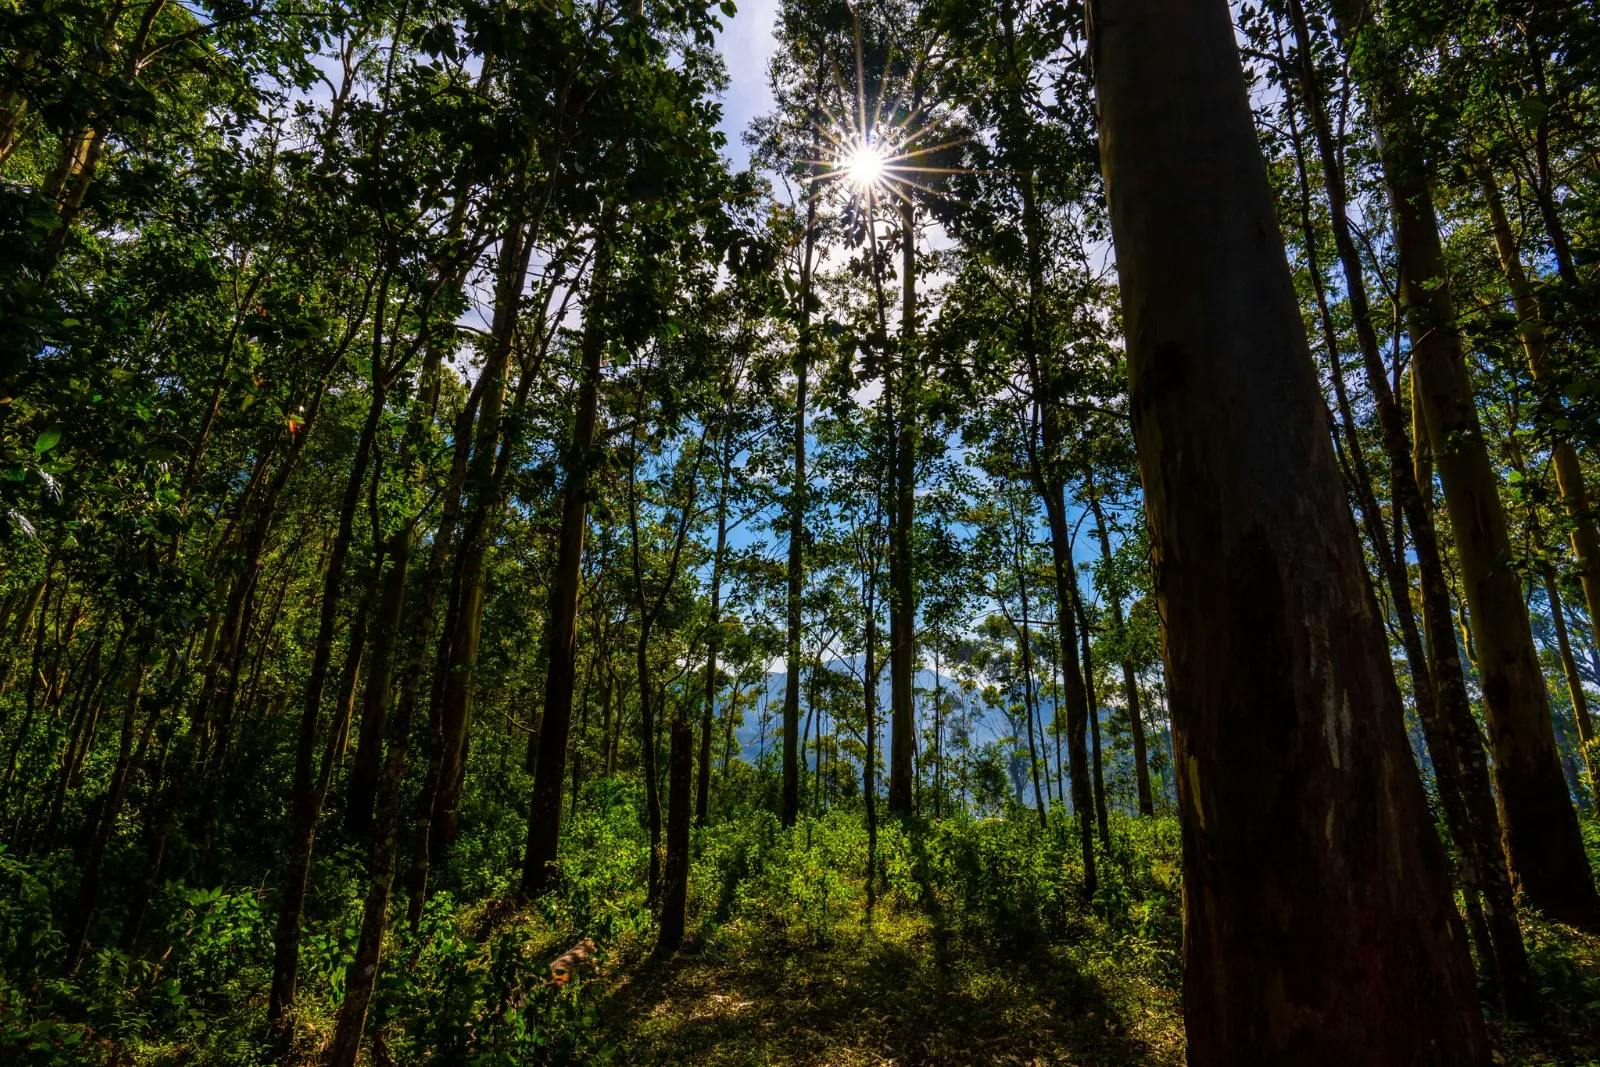 Kodaikanal Weekend Getaway: Tranquil Beauty of Tall Green Trees Under the Blue Sky